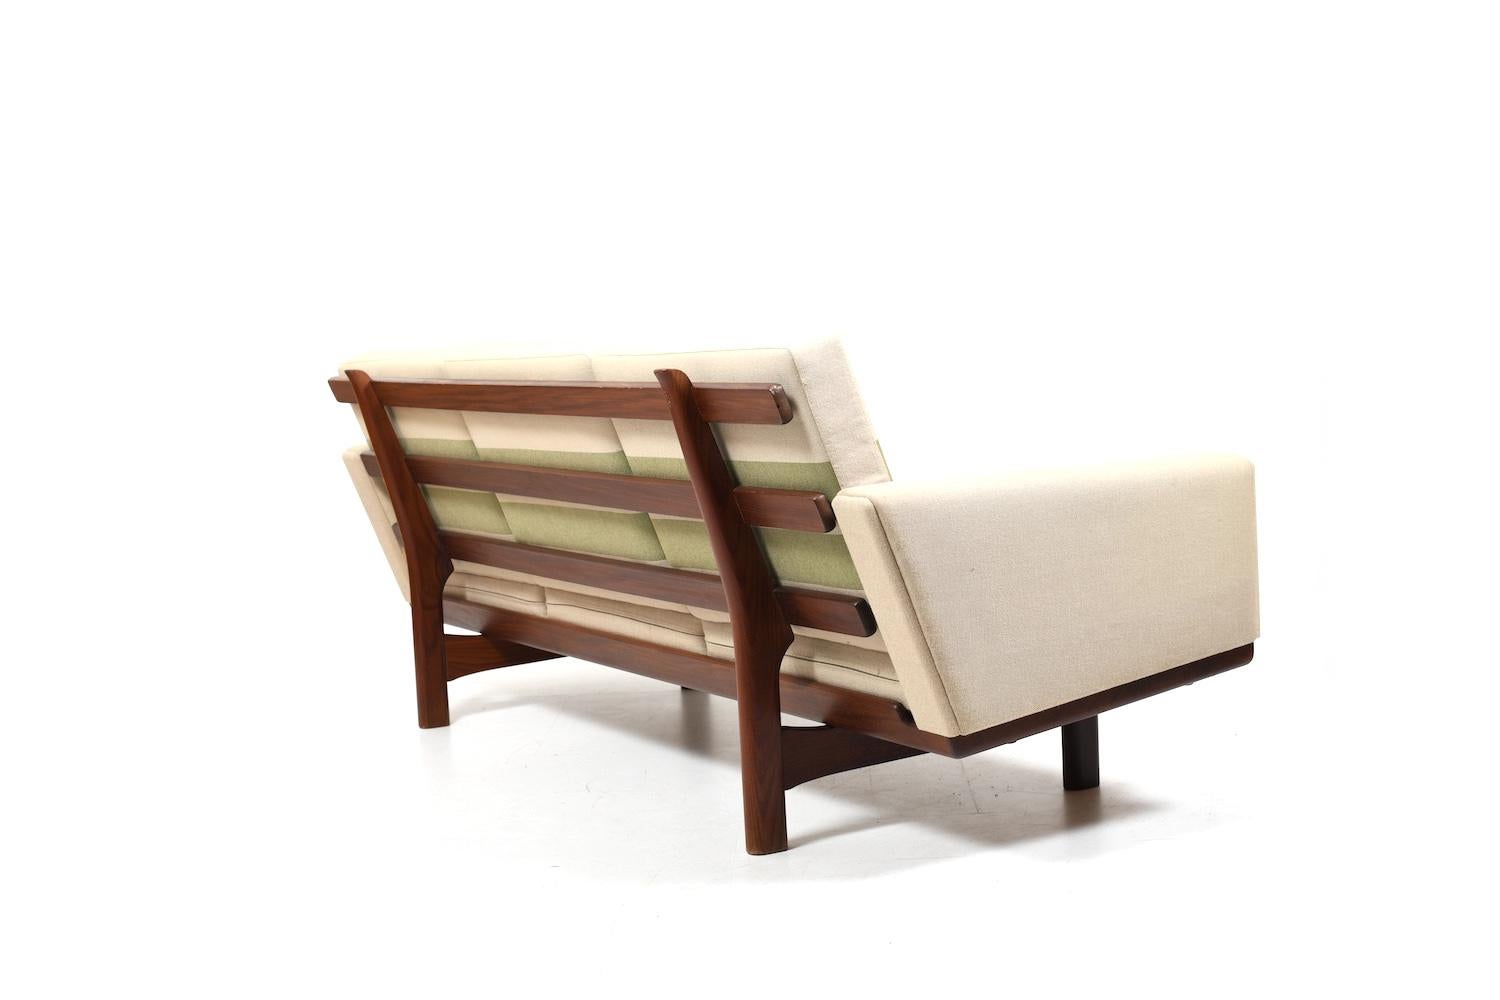 GE-236/3 Sofa in Teak by Hans J. Wegner 1960s For Sale 1